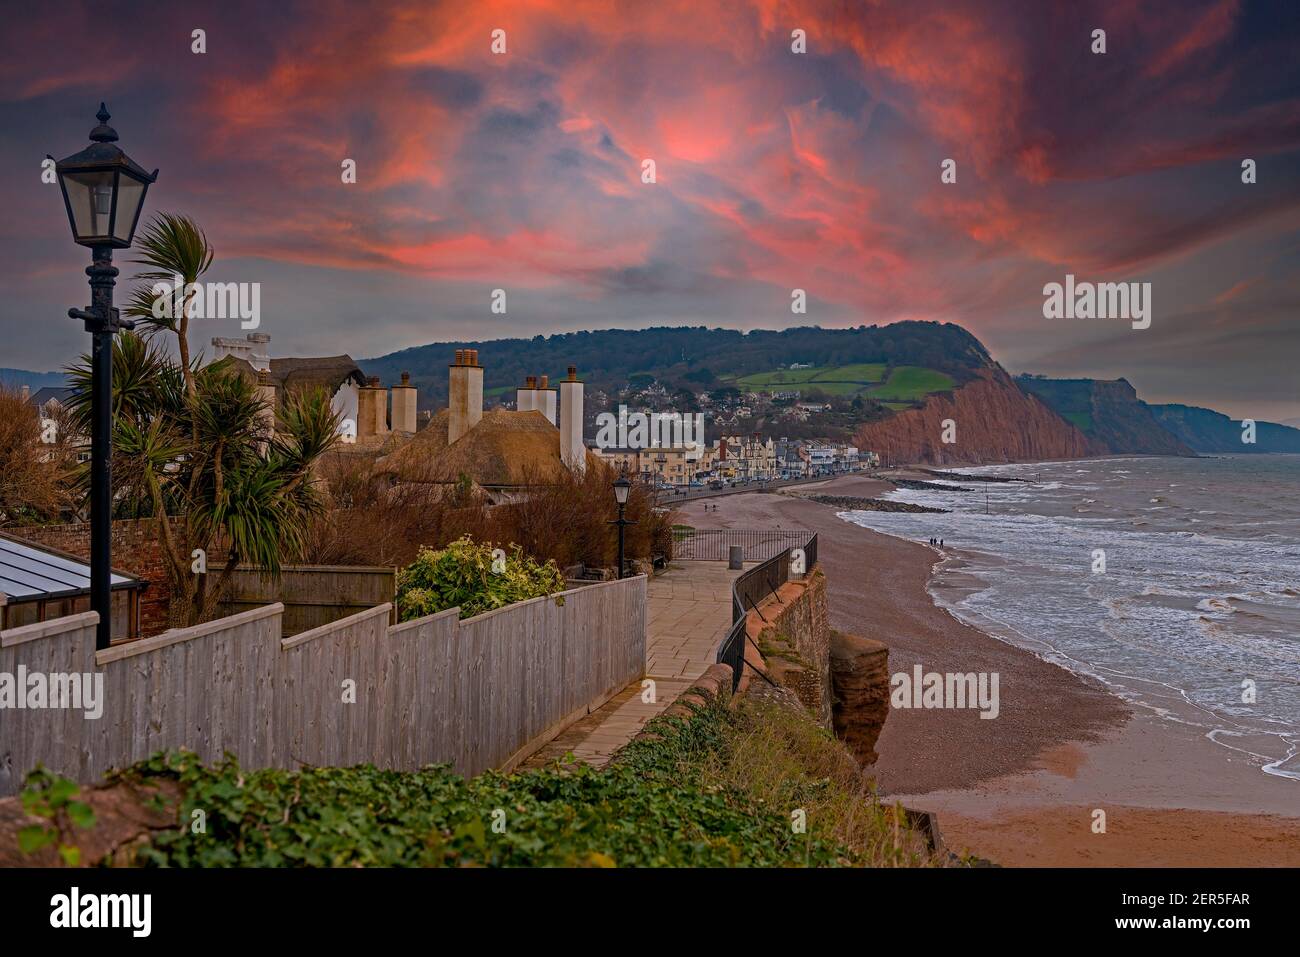 Meer, Strand und Küste von Sidmouth, einer kleinen beliebten Küstenstadt an der Südküste von Devon im Südwesten Englands Stockfoto